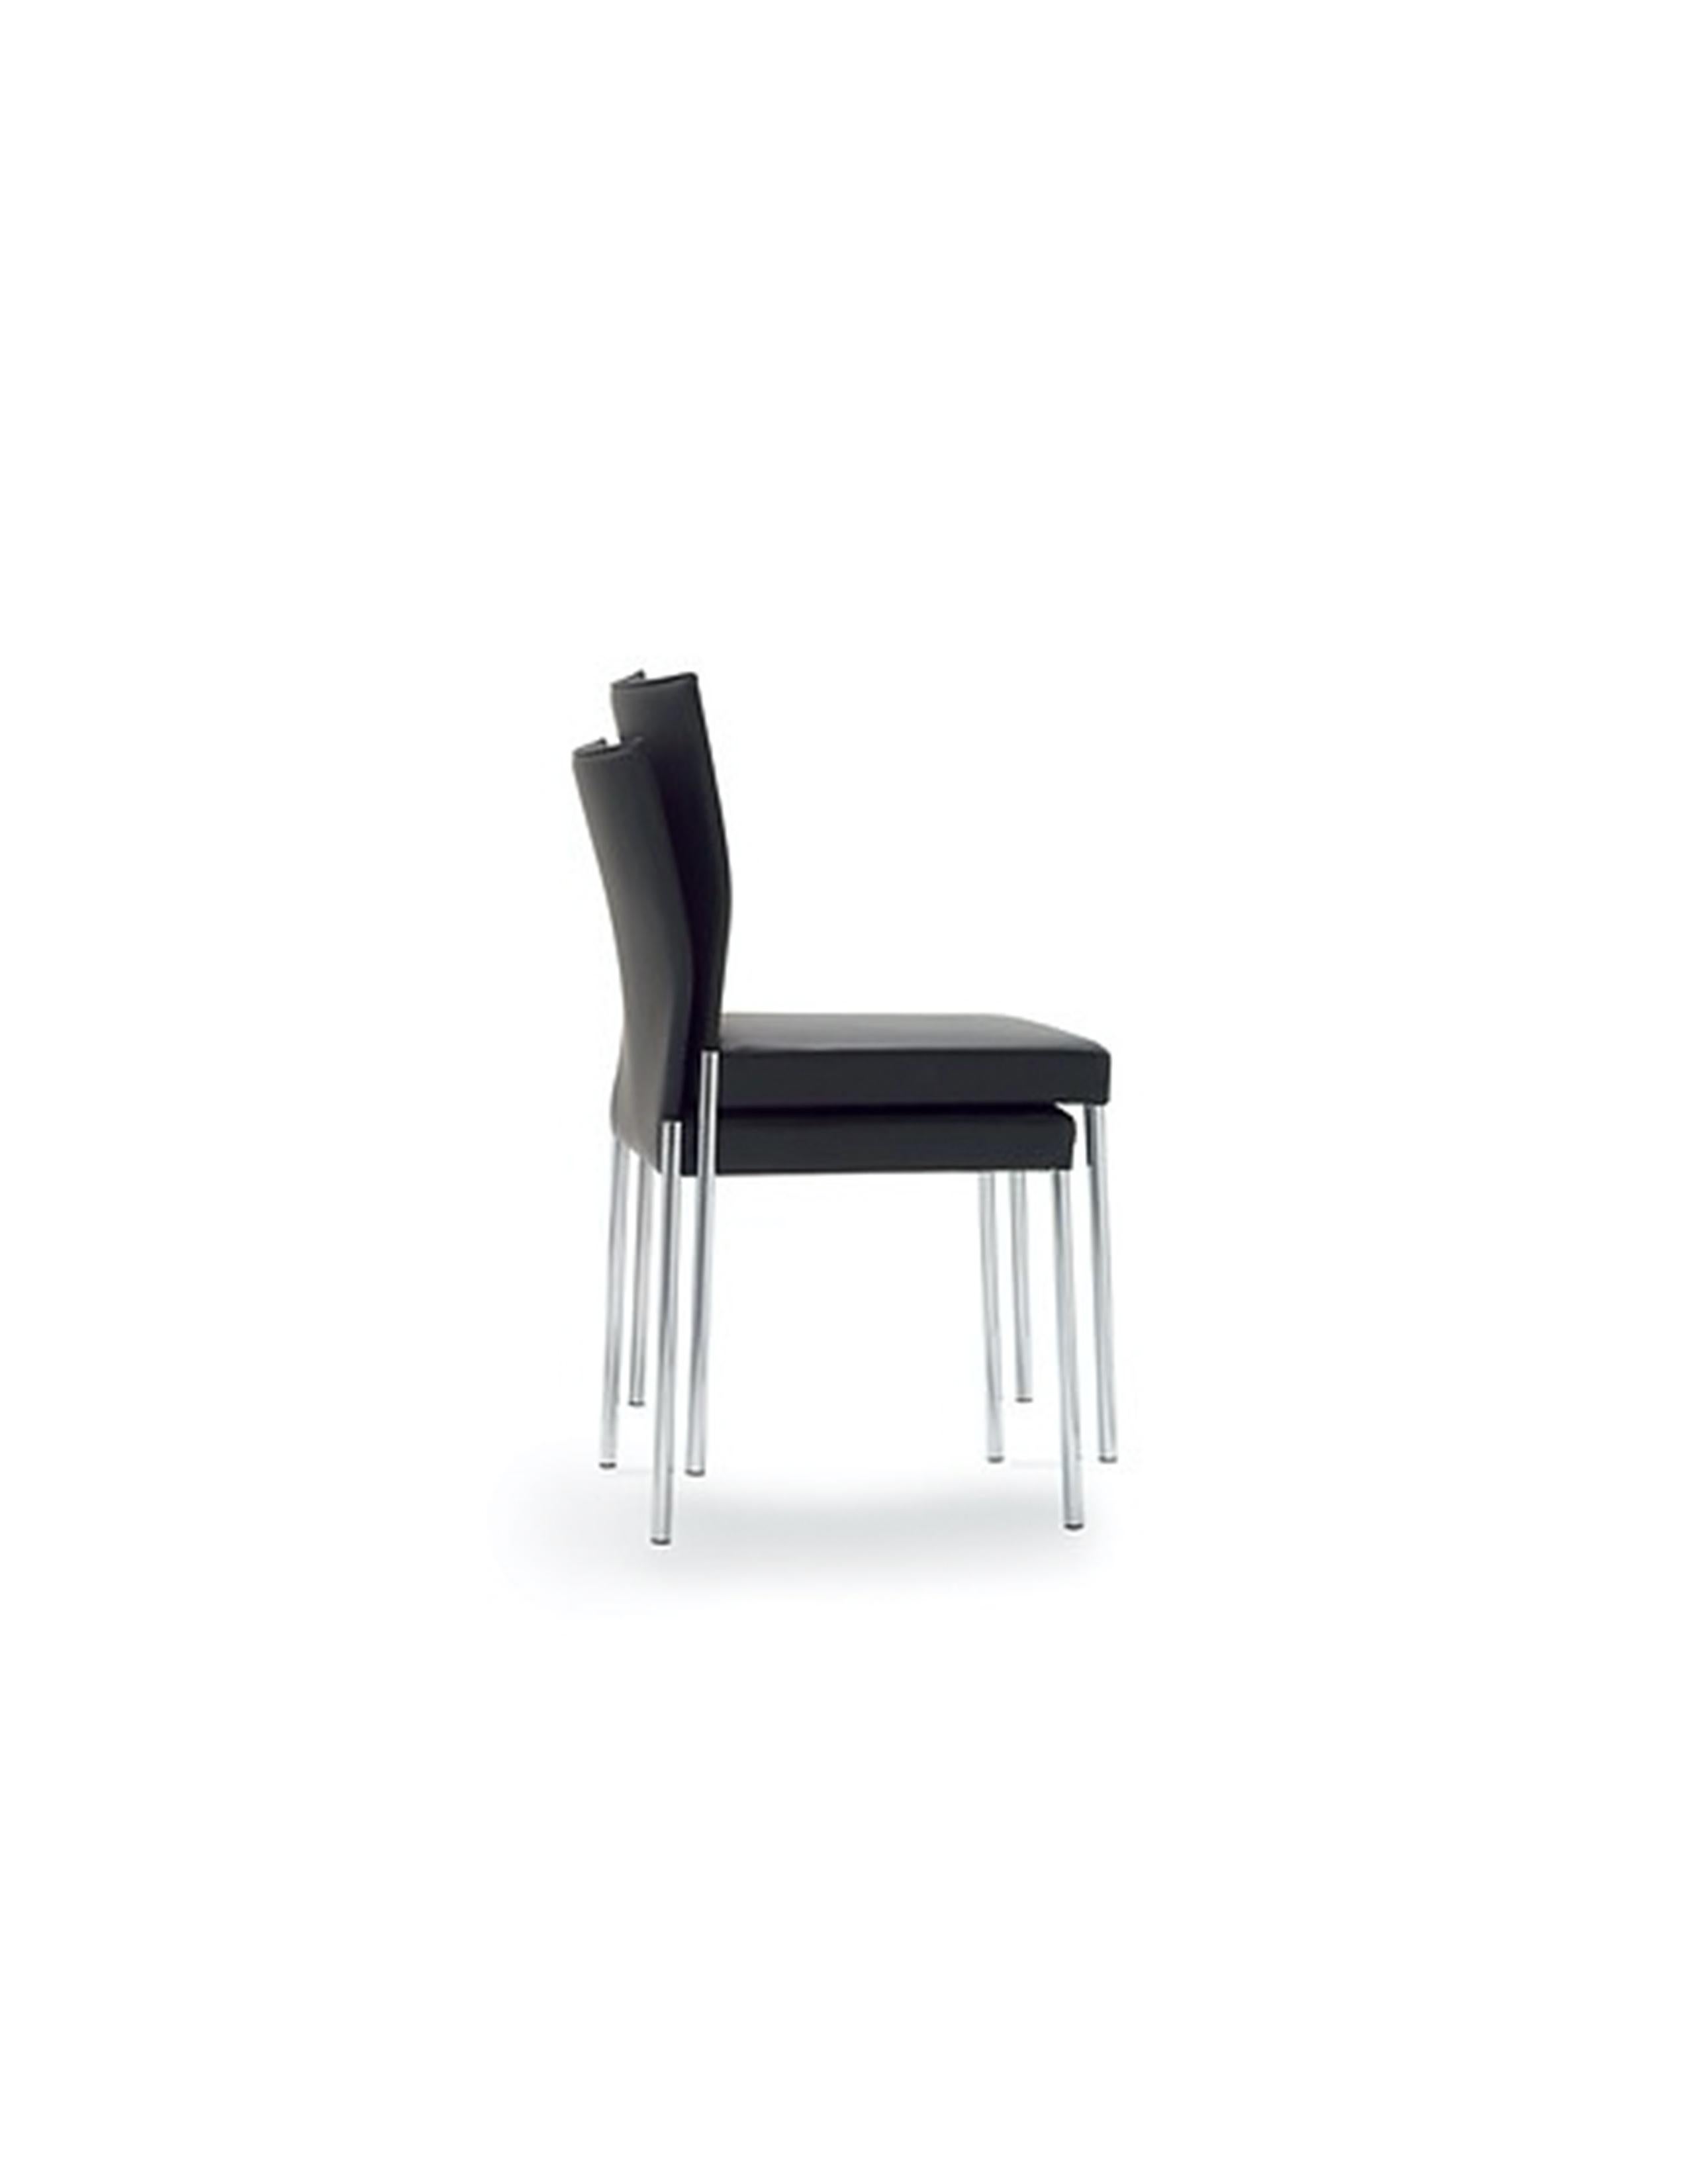 Konventionelle Stühle, der Glooh vermittelt ein unverwechselbares Design. Kein Wunder, dass Glooh bereits mehrfach mit einem internationalen Preis ausgezeichnet wurde.
Hocker mit rundem Stahlrohrgestell. Sitzschale aus geformtem, laminiertem